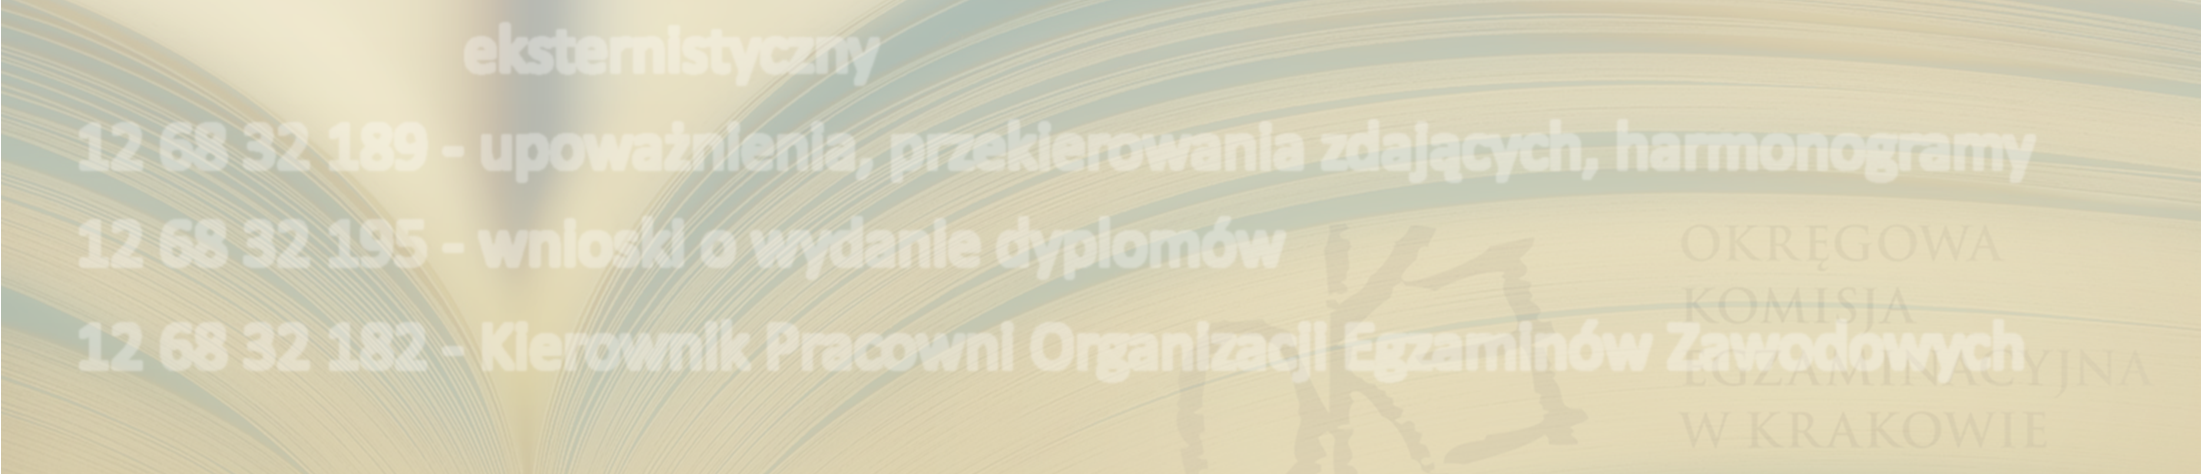 Pytania i wątpliwości dotyczące spraw organizacyjnych mail: wez@oke.krakow.